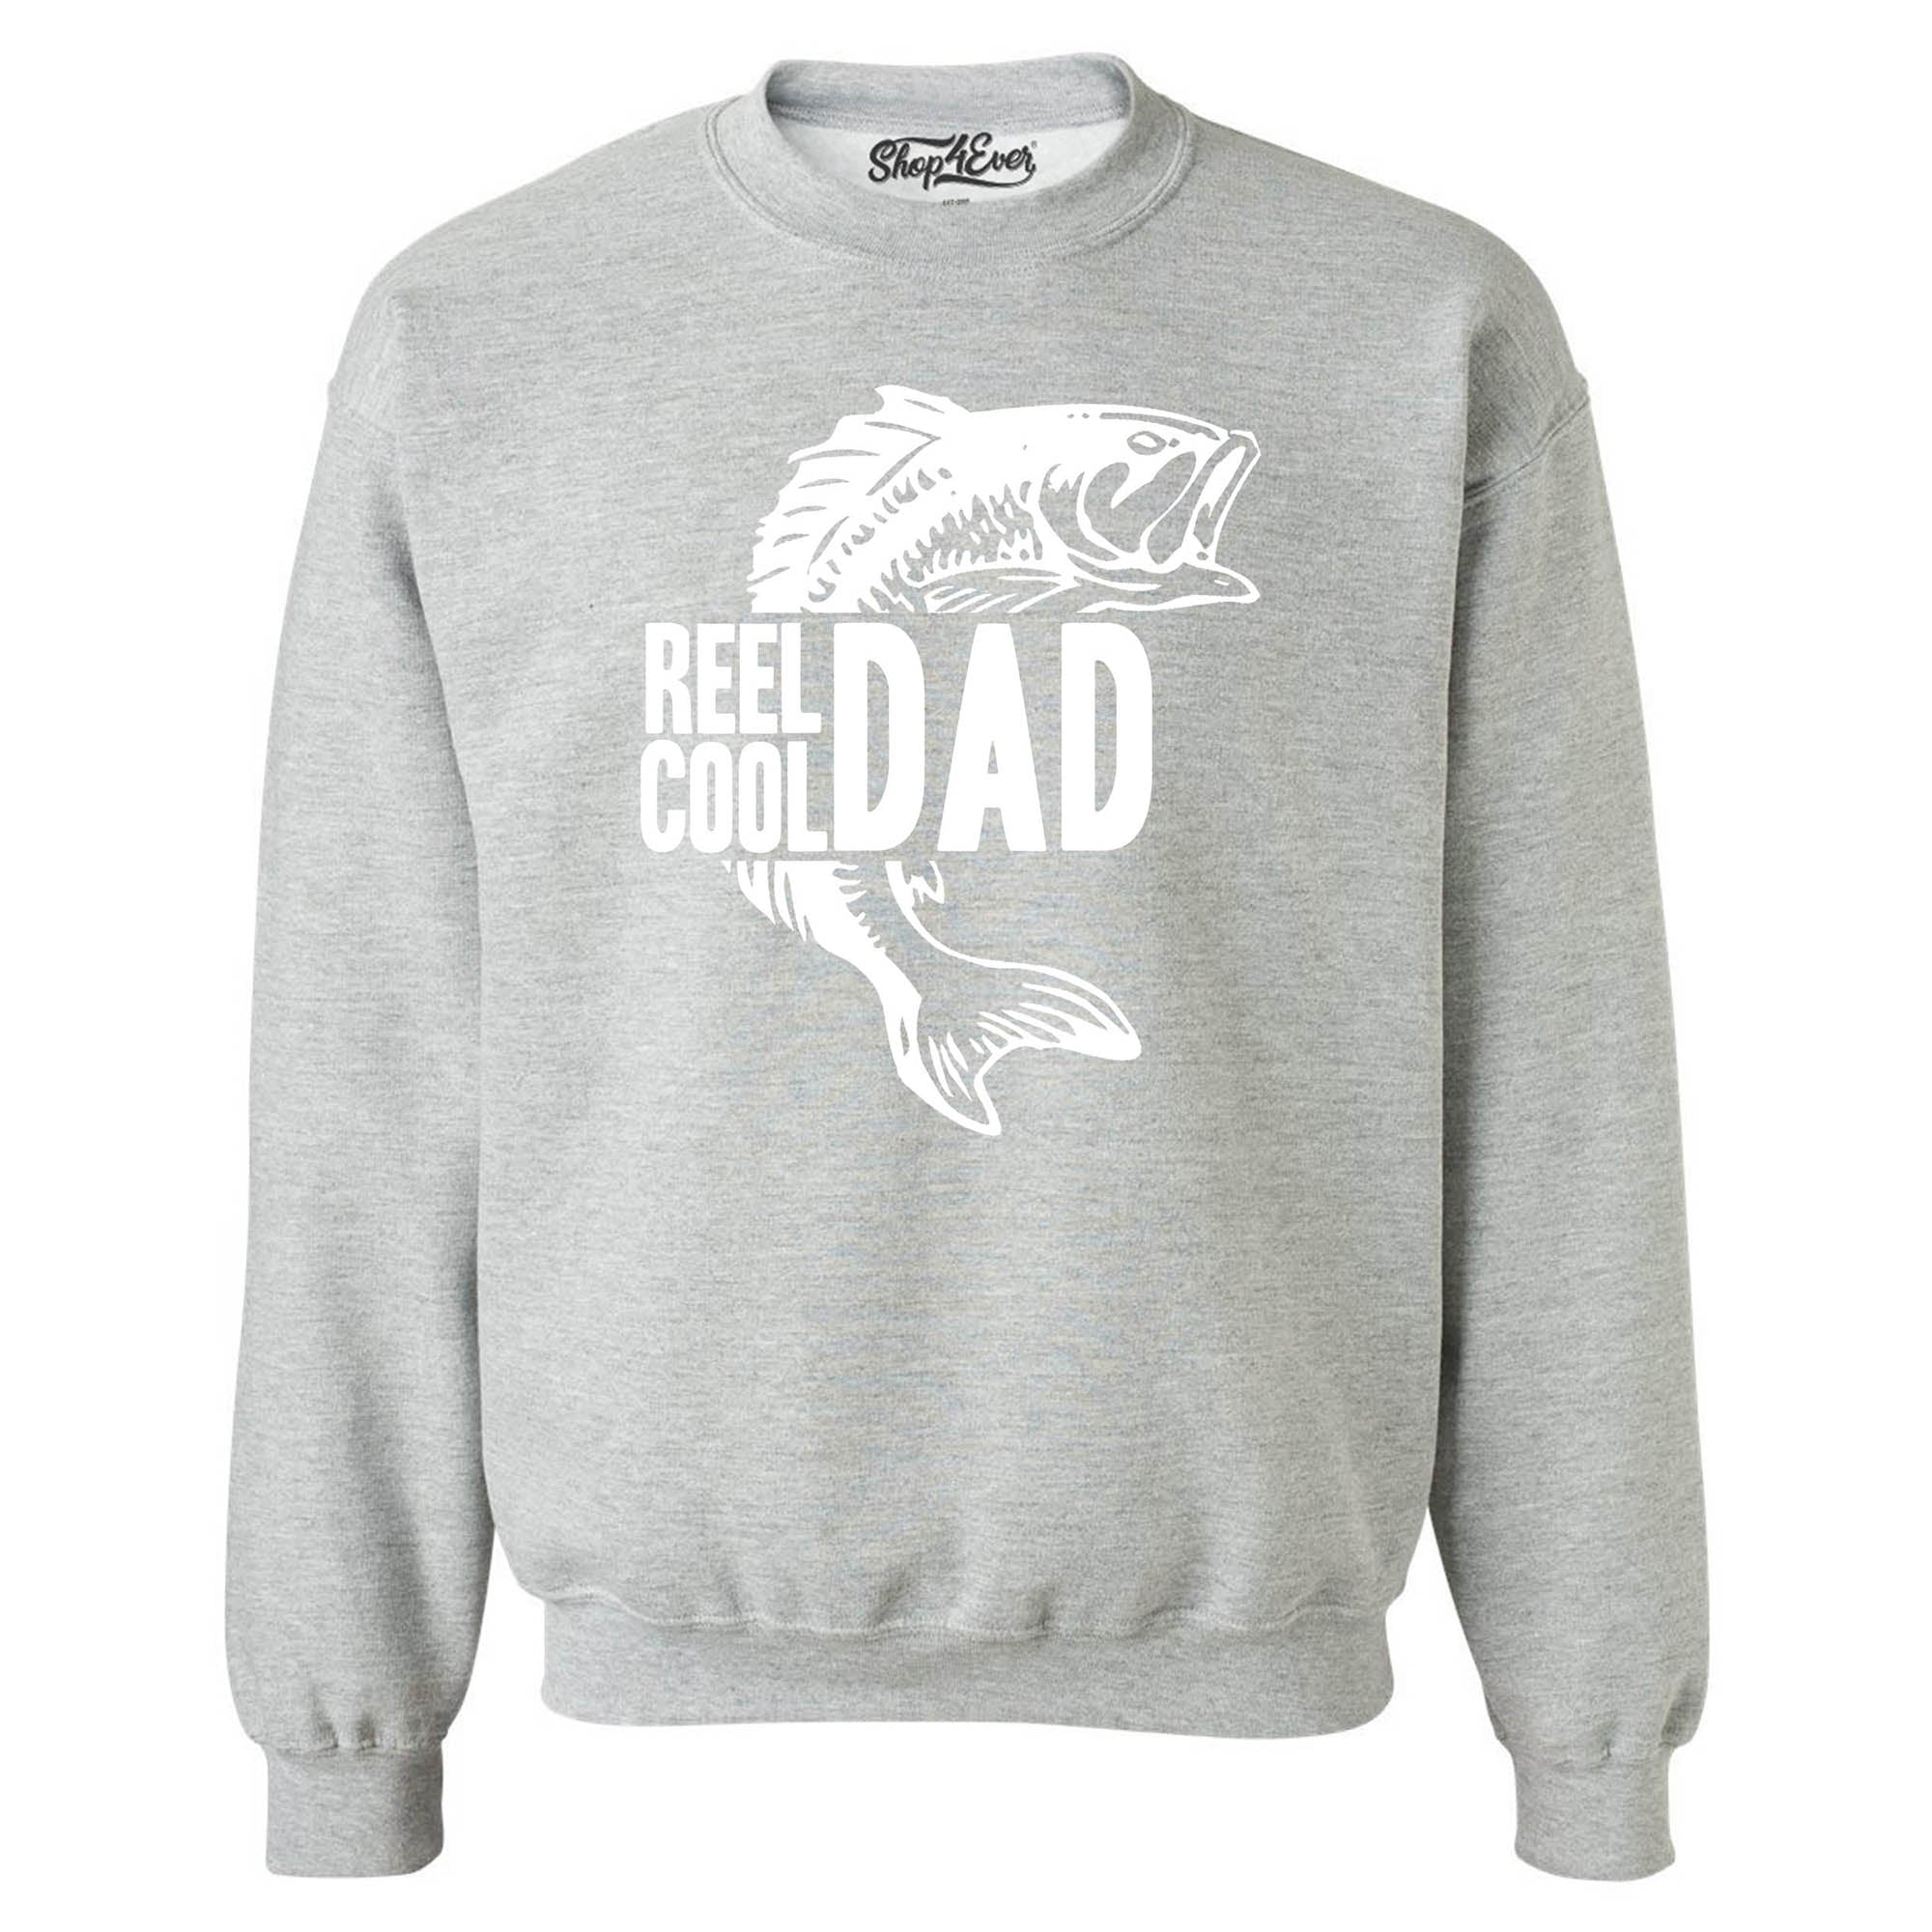 Reel Cool Dad Fishing Lake Crewneck Sweatshirts